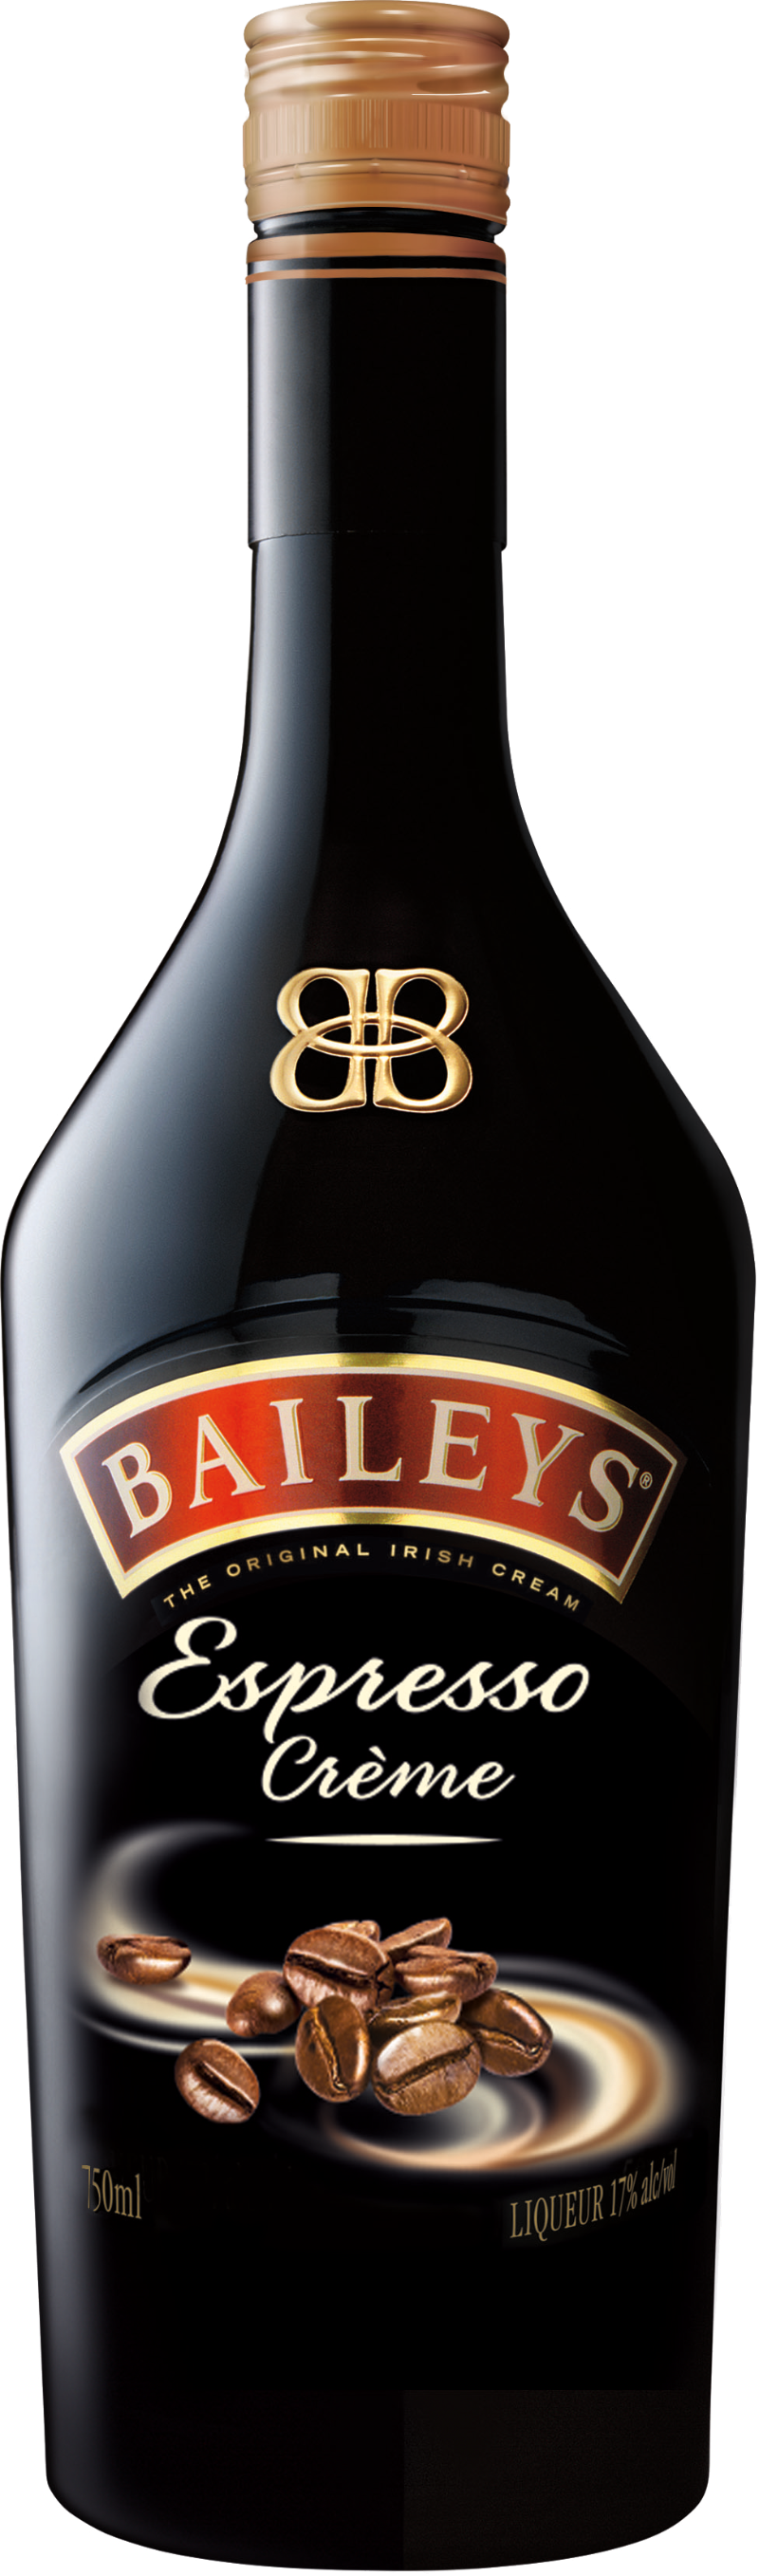 vol Baileys 100 Espresso - cl Creme 17%